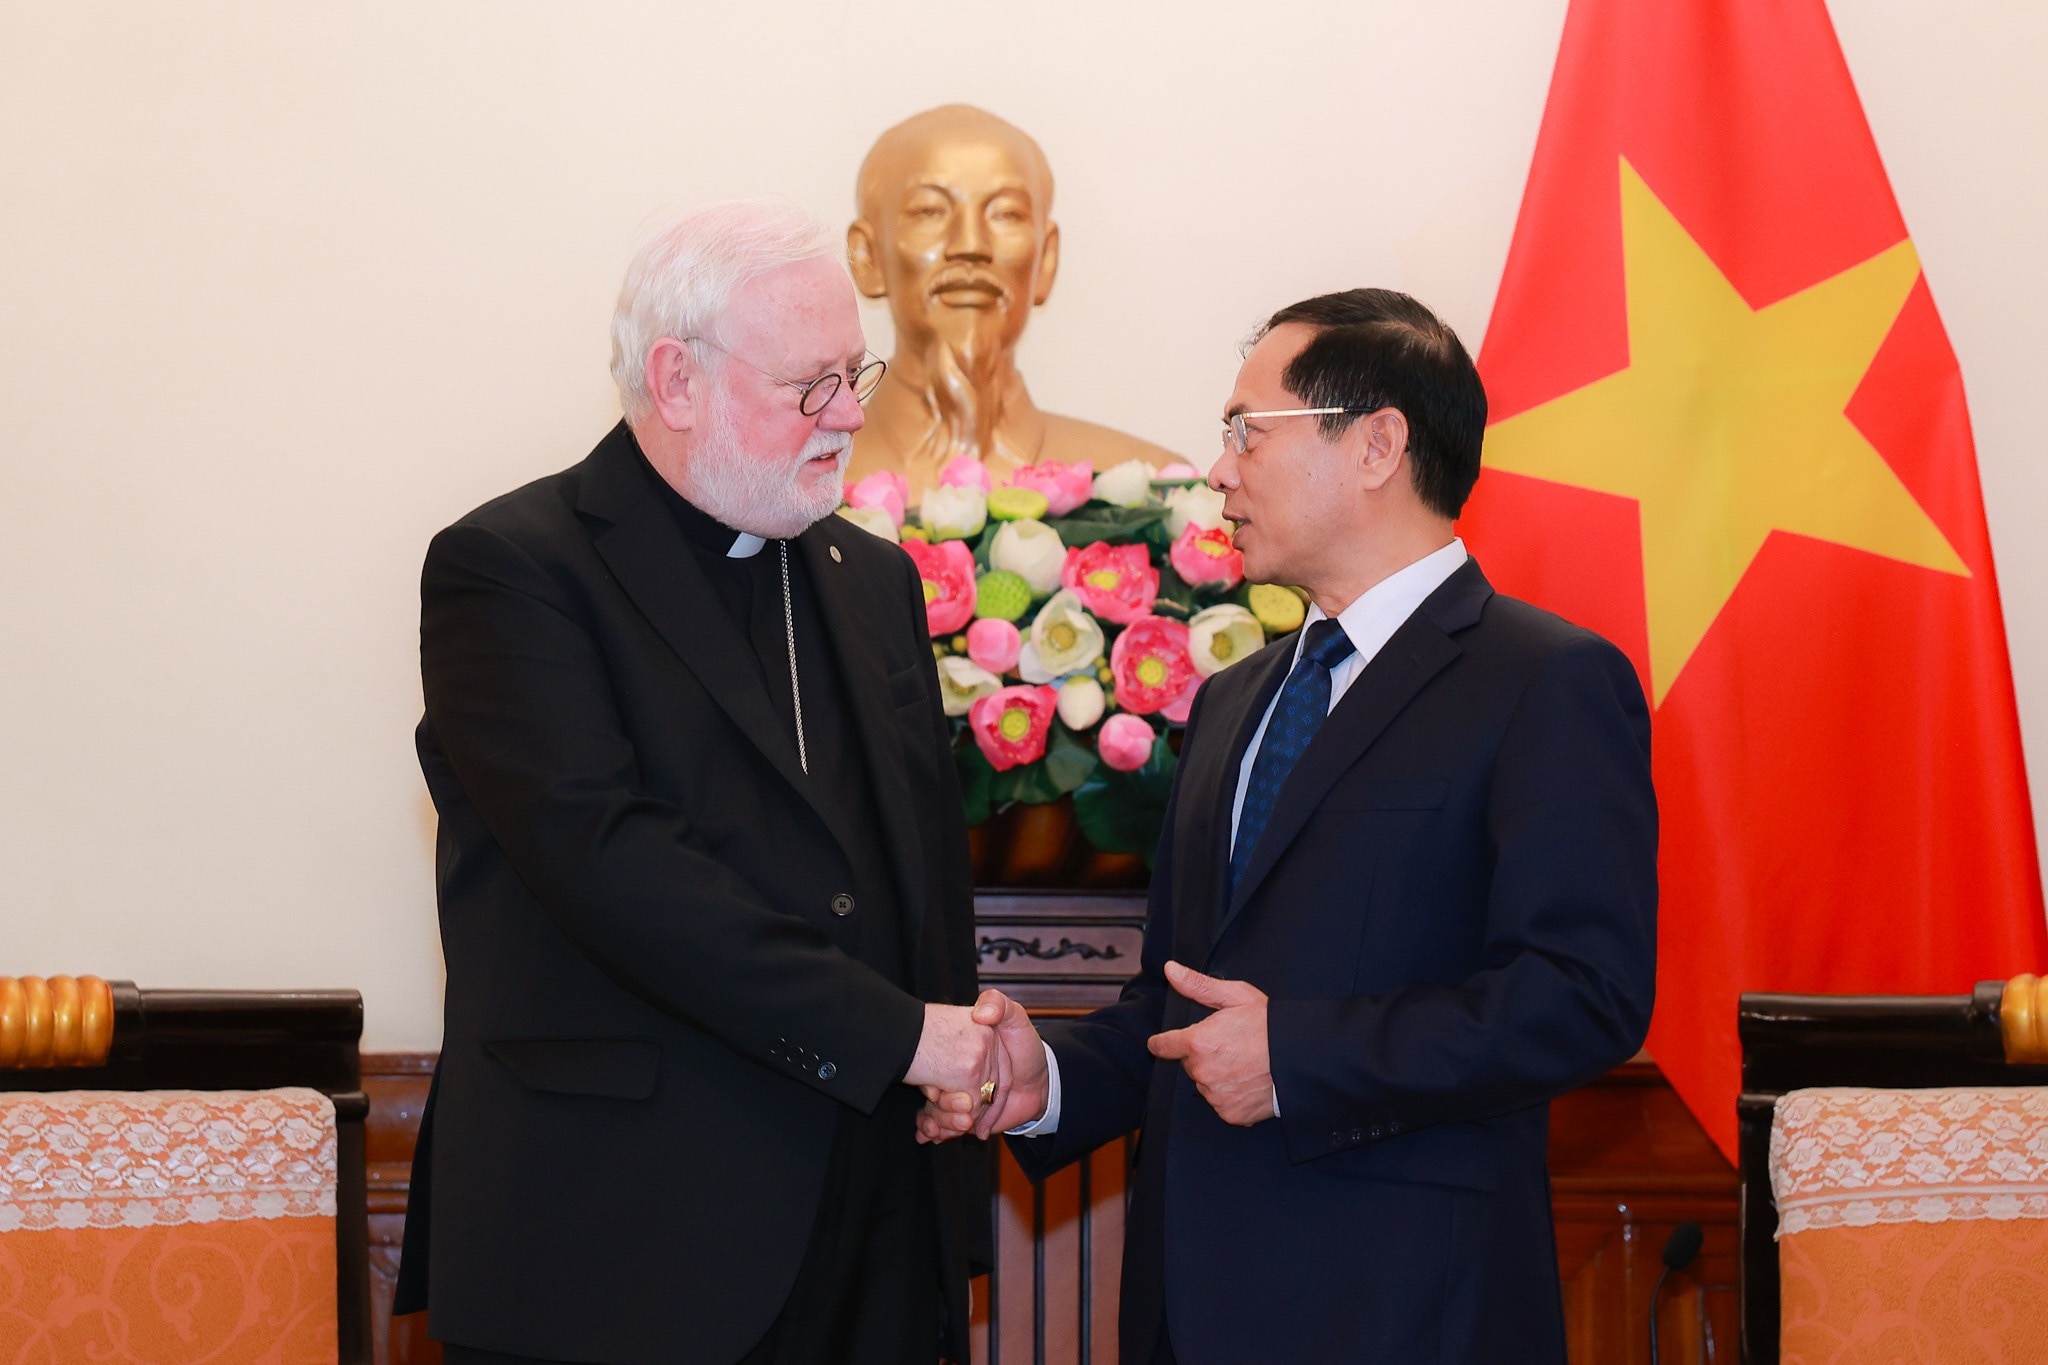 Le ministre Bui Thanh Son estime que cette visite contribuera à promouvoir les bonnes relations entre le Vietnam et le Vatican. Photo de : Hai Nguyen